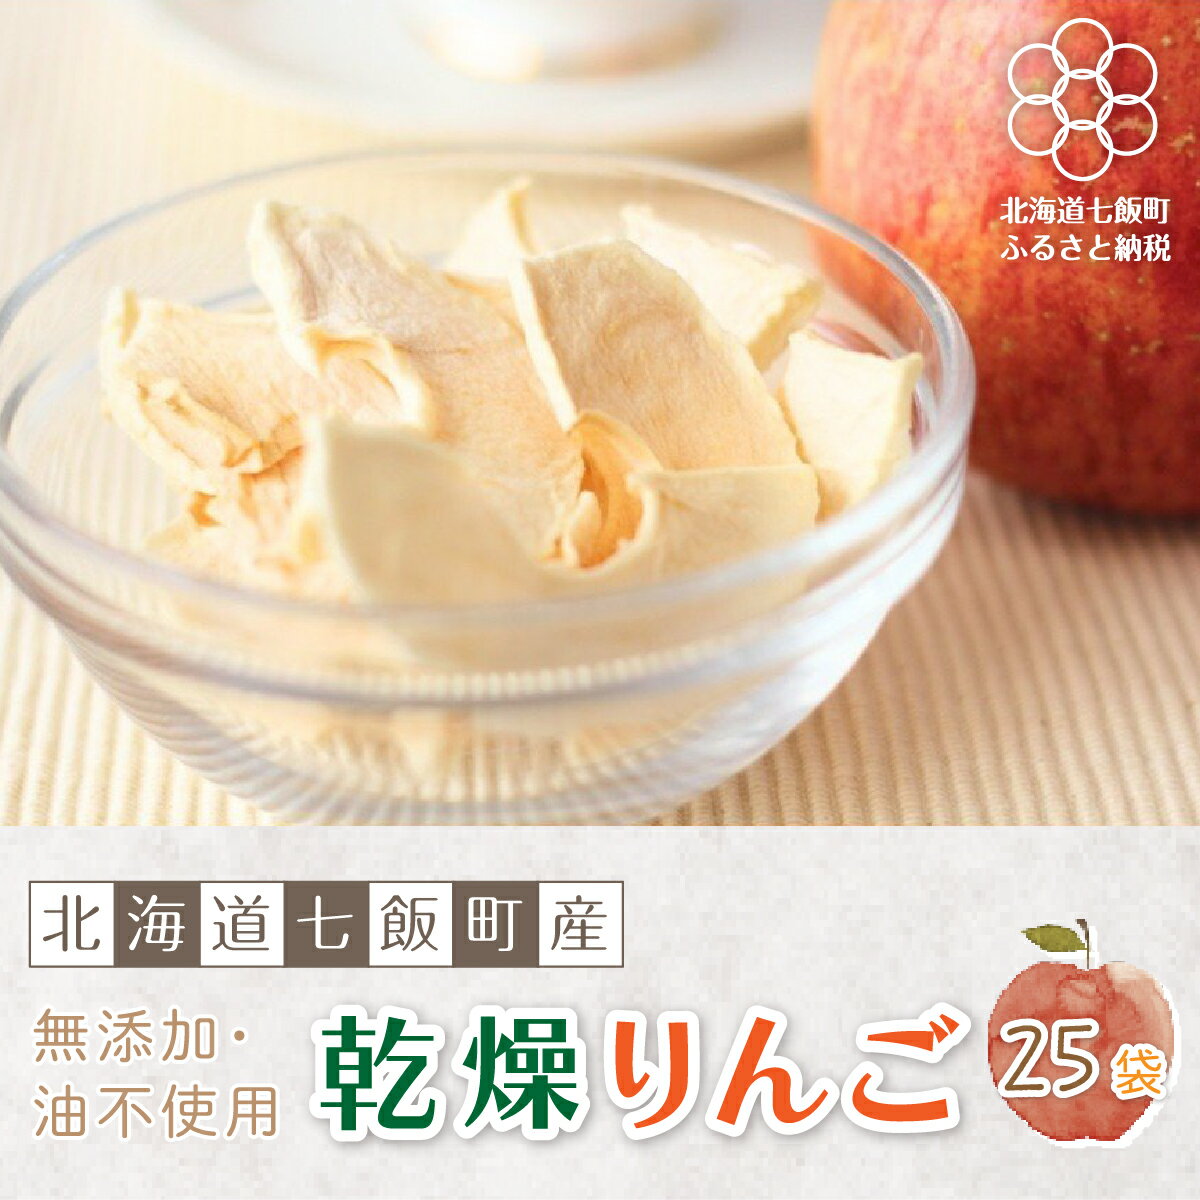 無添加 りんごチップス 25袋パック (乾燥りんご) [北海道産りんごそのまんま] 北海道七飯町 りんご リンゴ アップル チップス 乾燥りんご 素材の味 無添加 健康 美容 スイーツ おやつ